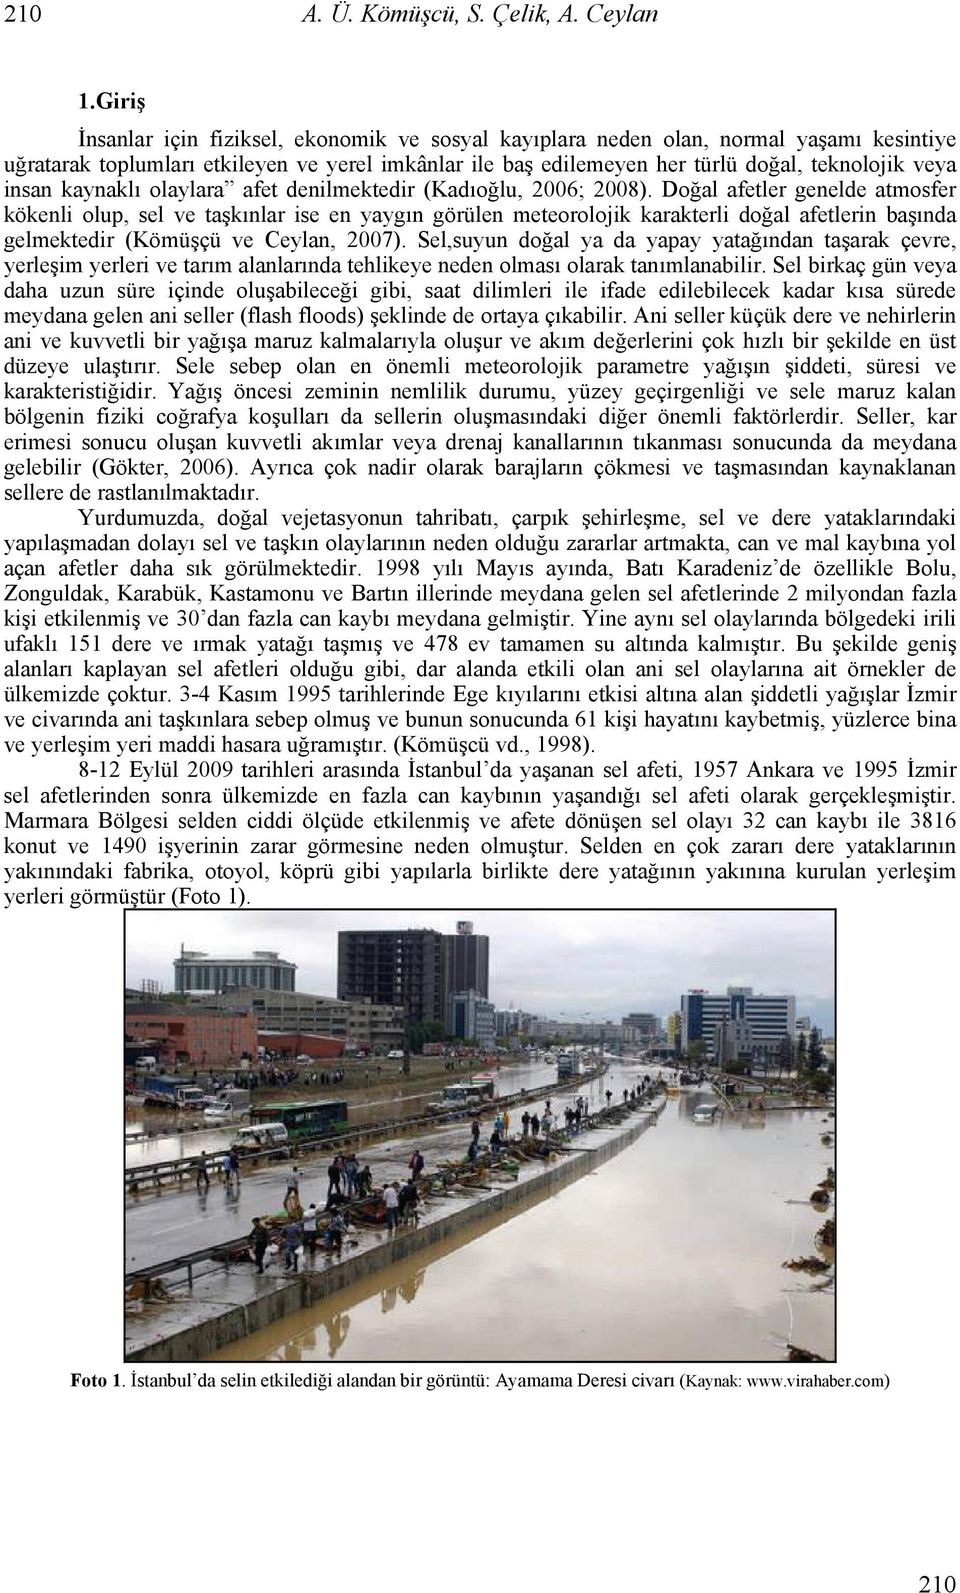 insan kaynaklı olaylara afet denilmektedir (Kadıoğlu, 2006; 2008).